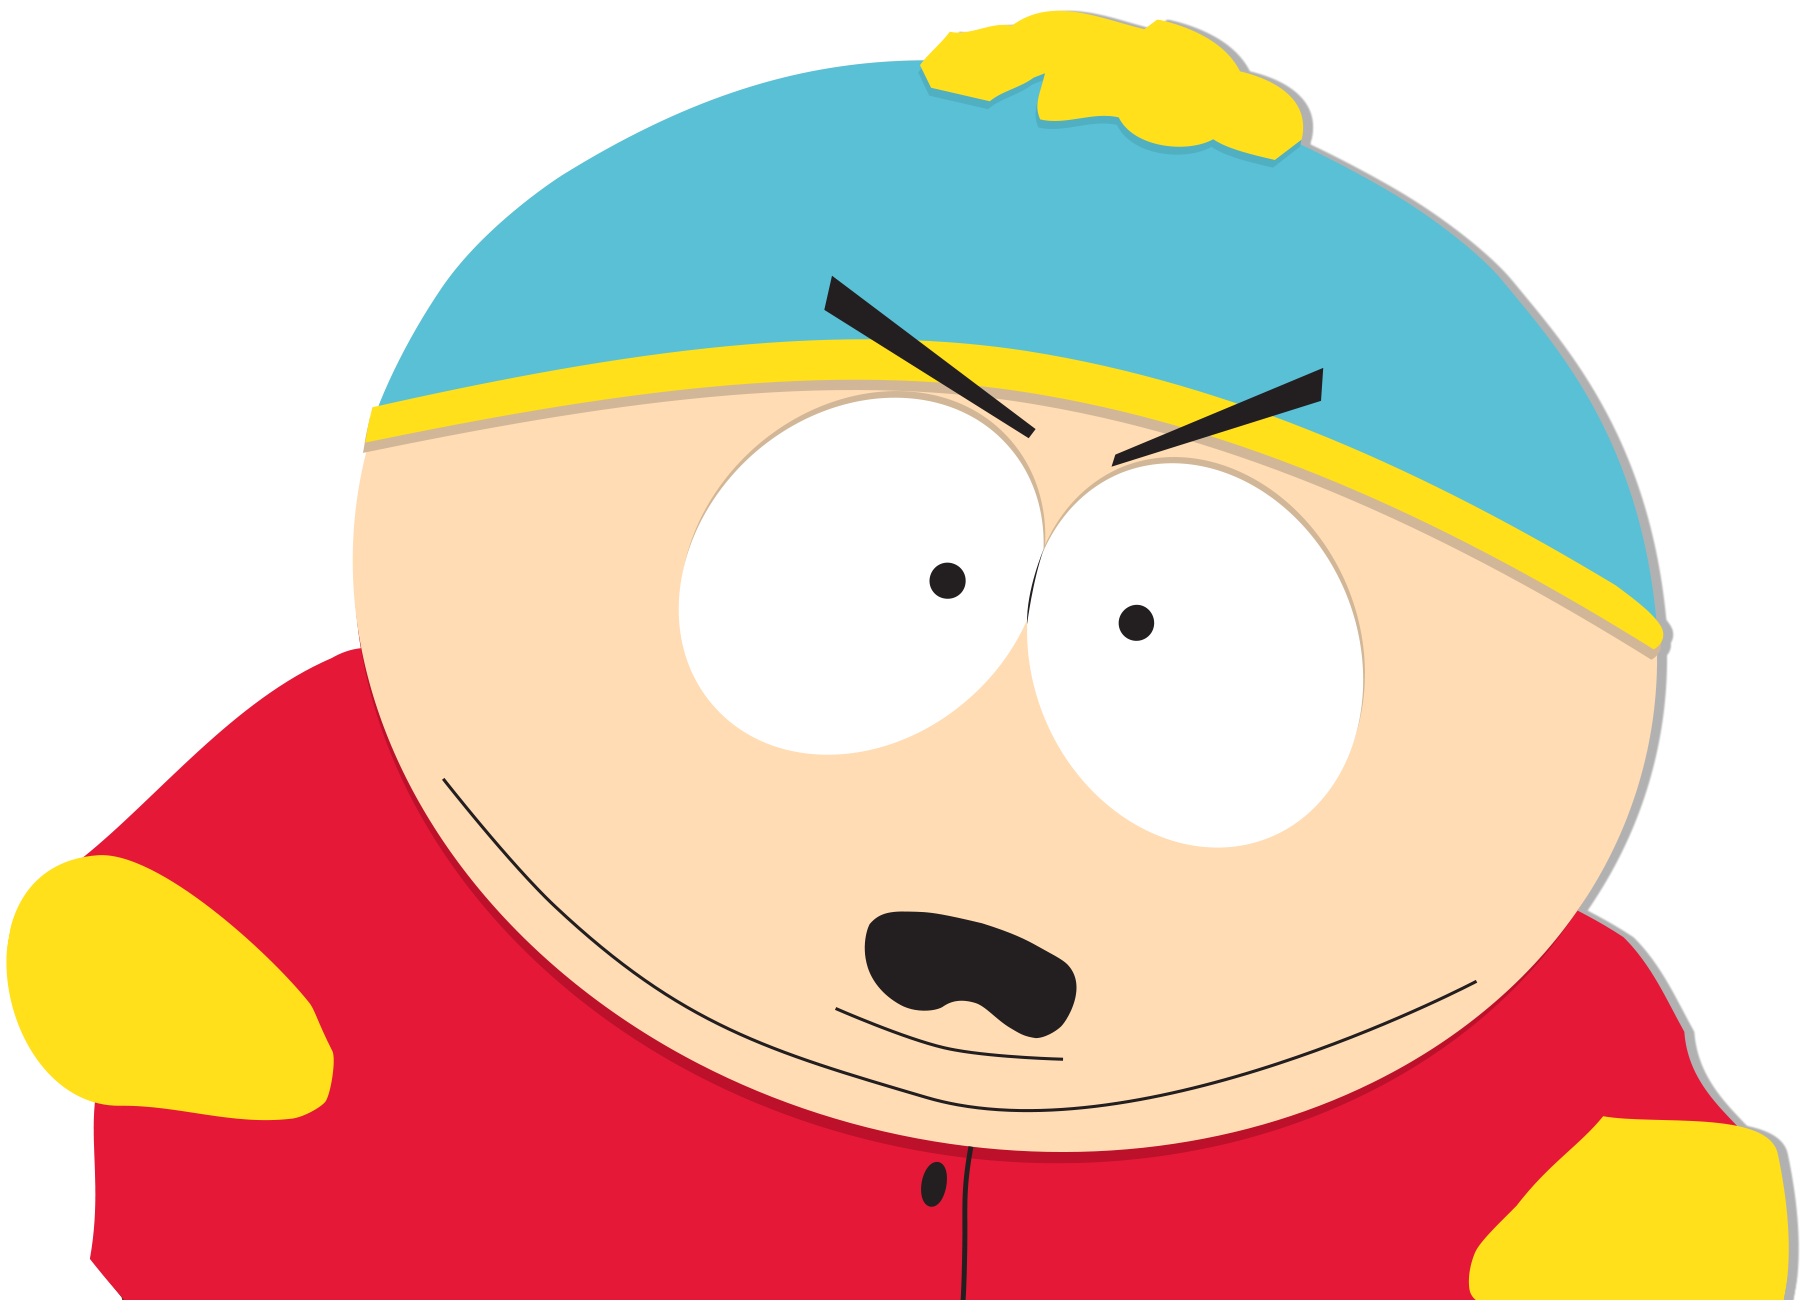 South Park Cartman Screw You Guys Pink Short Sleeve T-Shirt – Paramount Shop